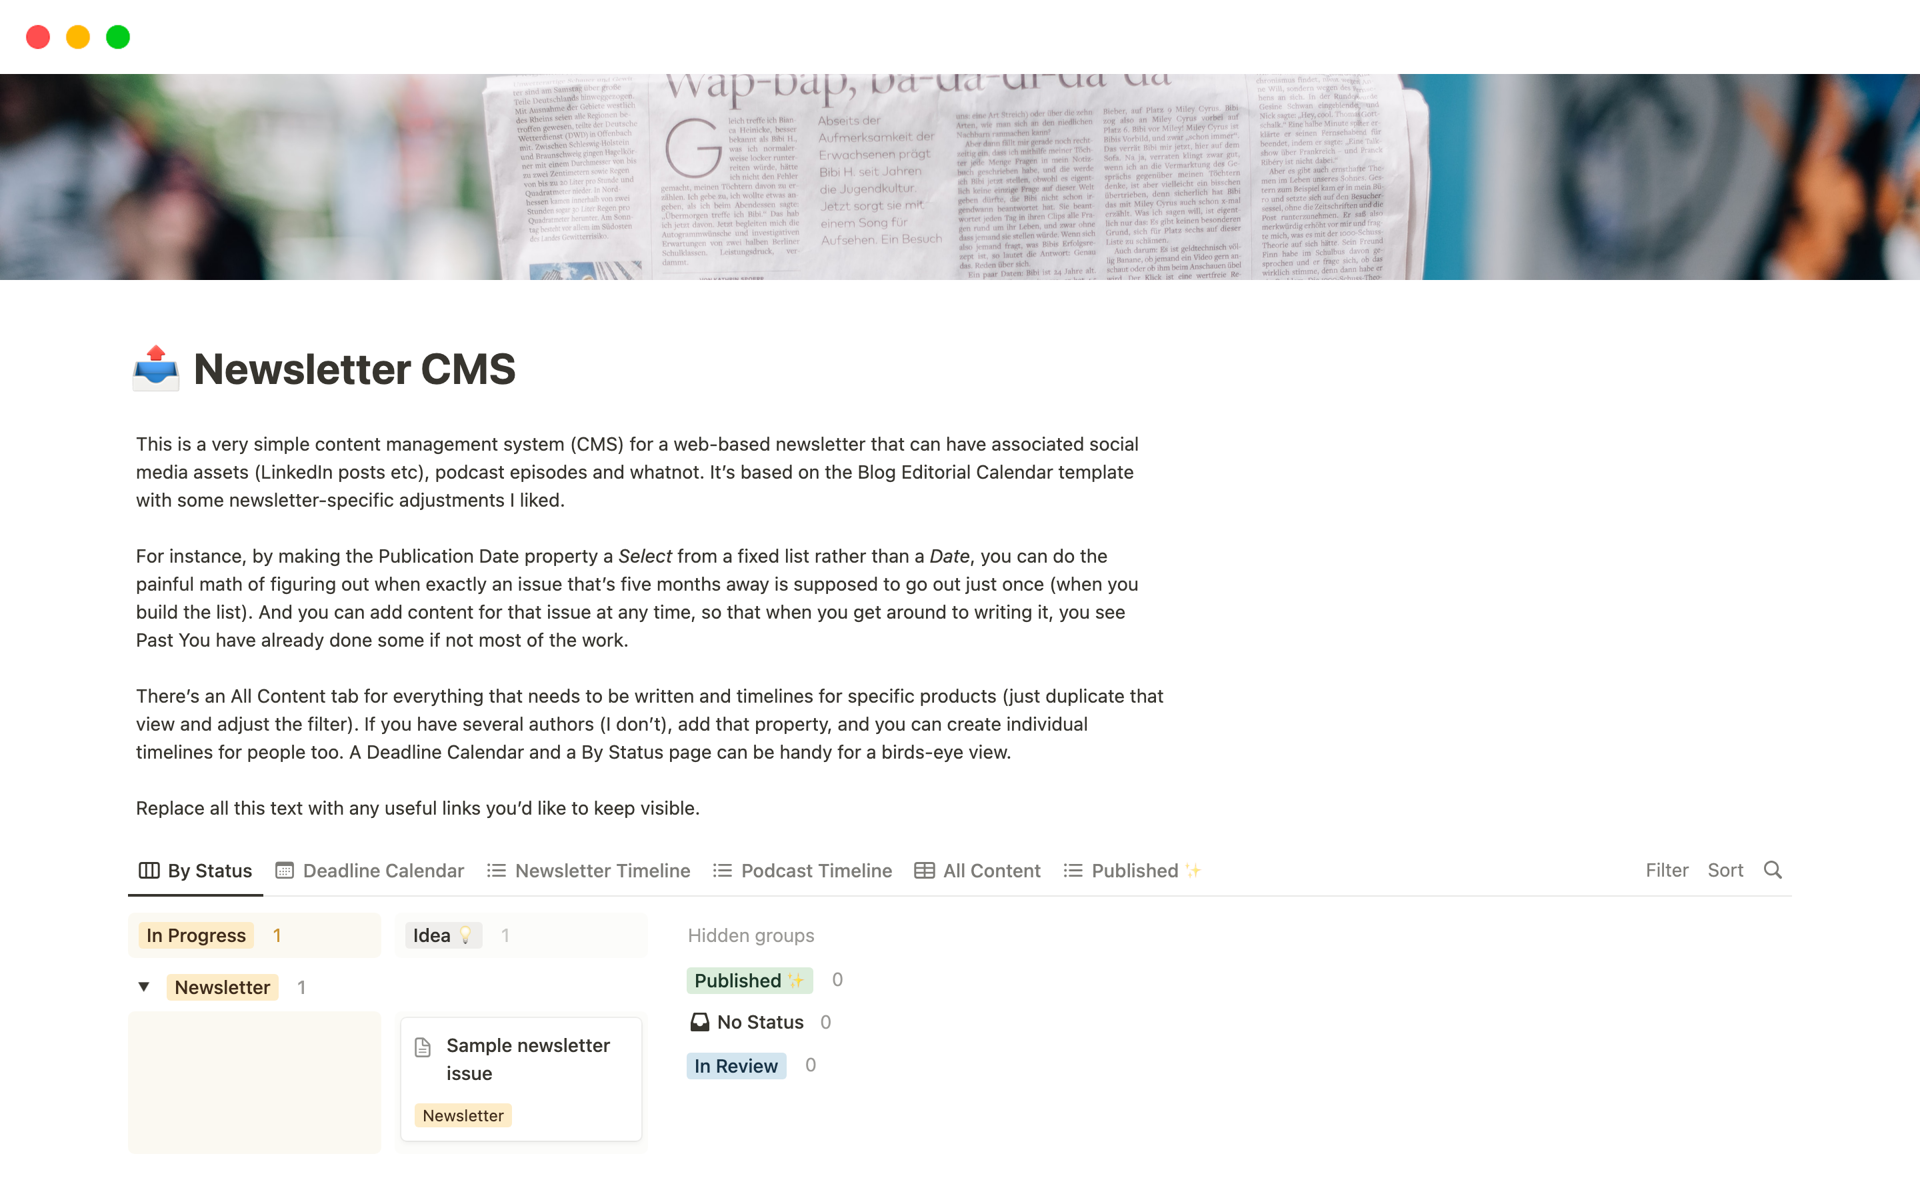 Vista previa de una plantilla para Newsletter CMS